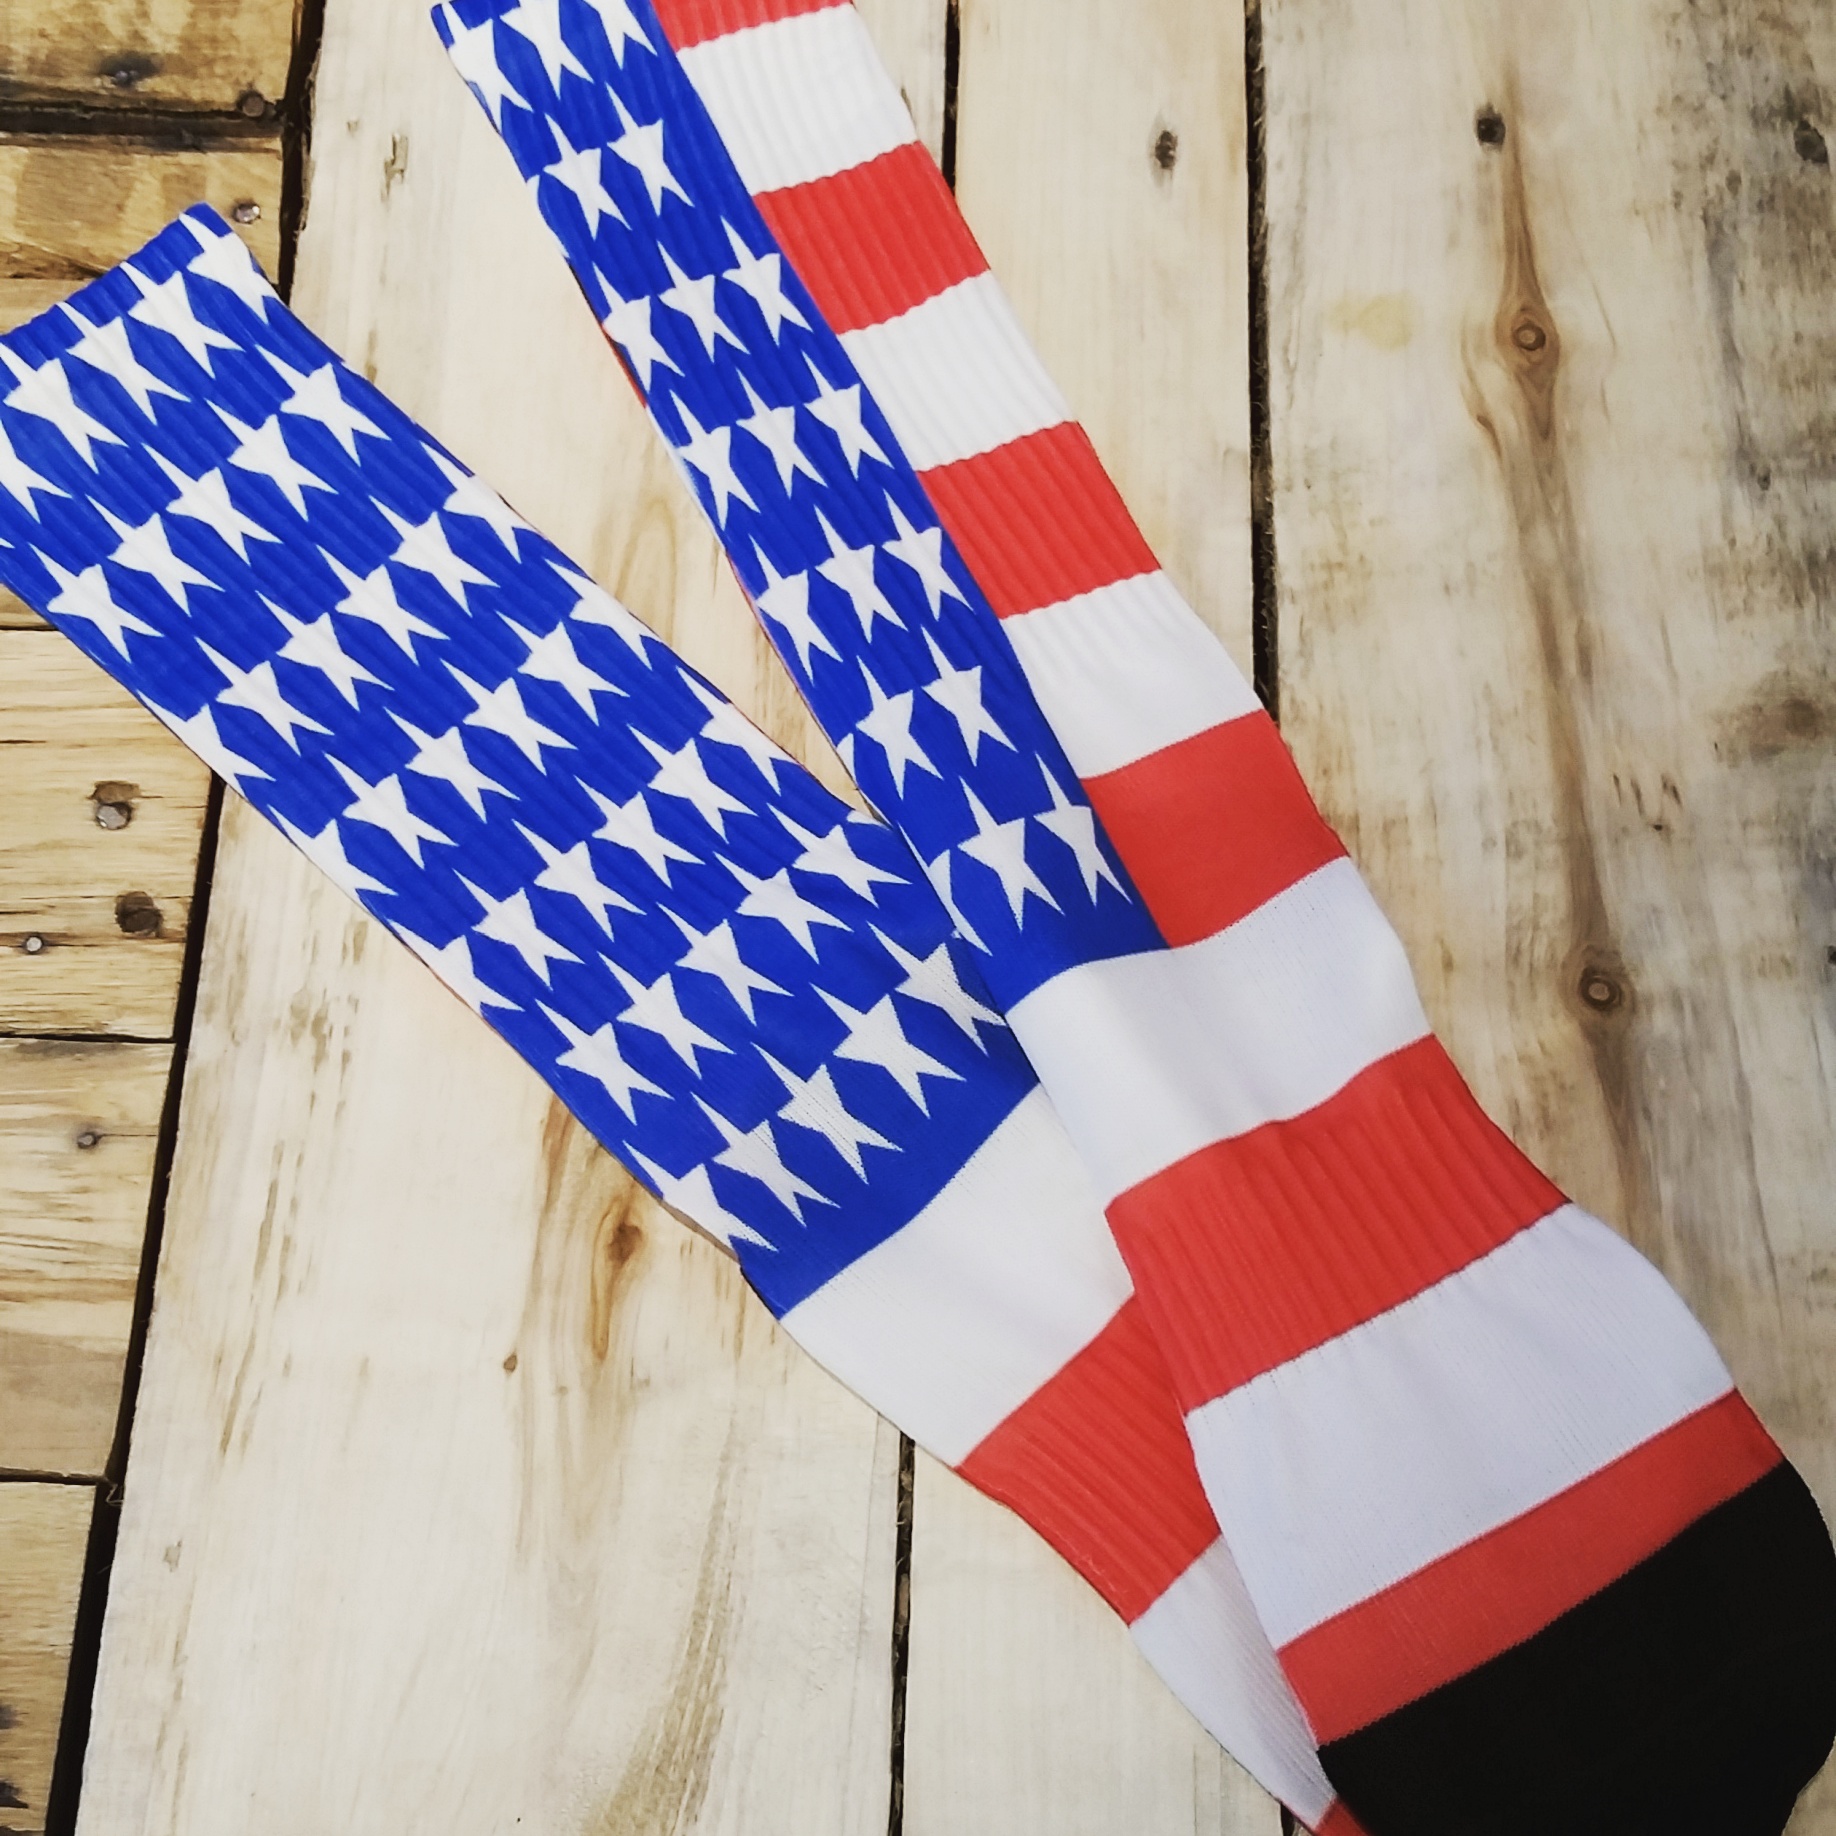 USA Socks made with sublimation printing